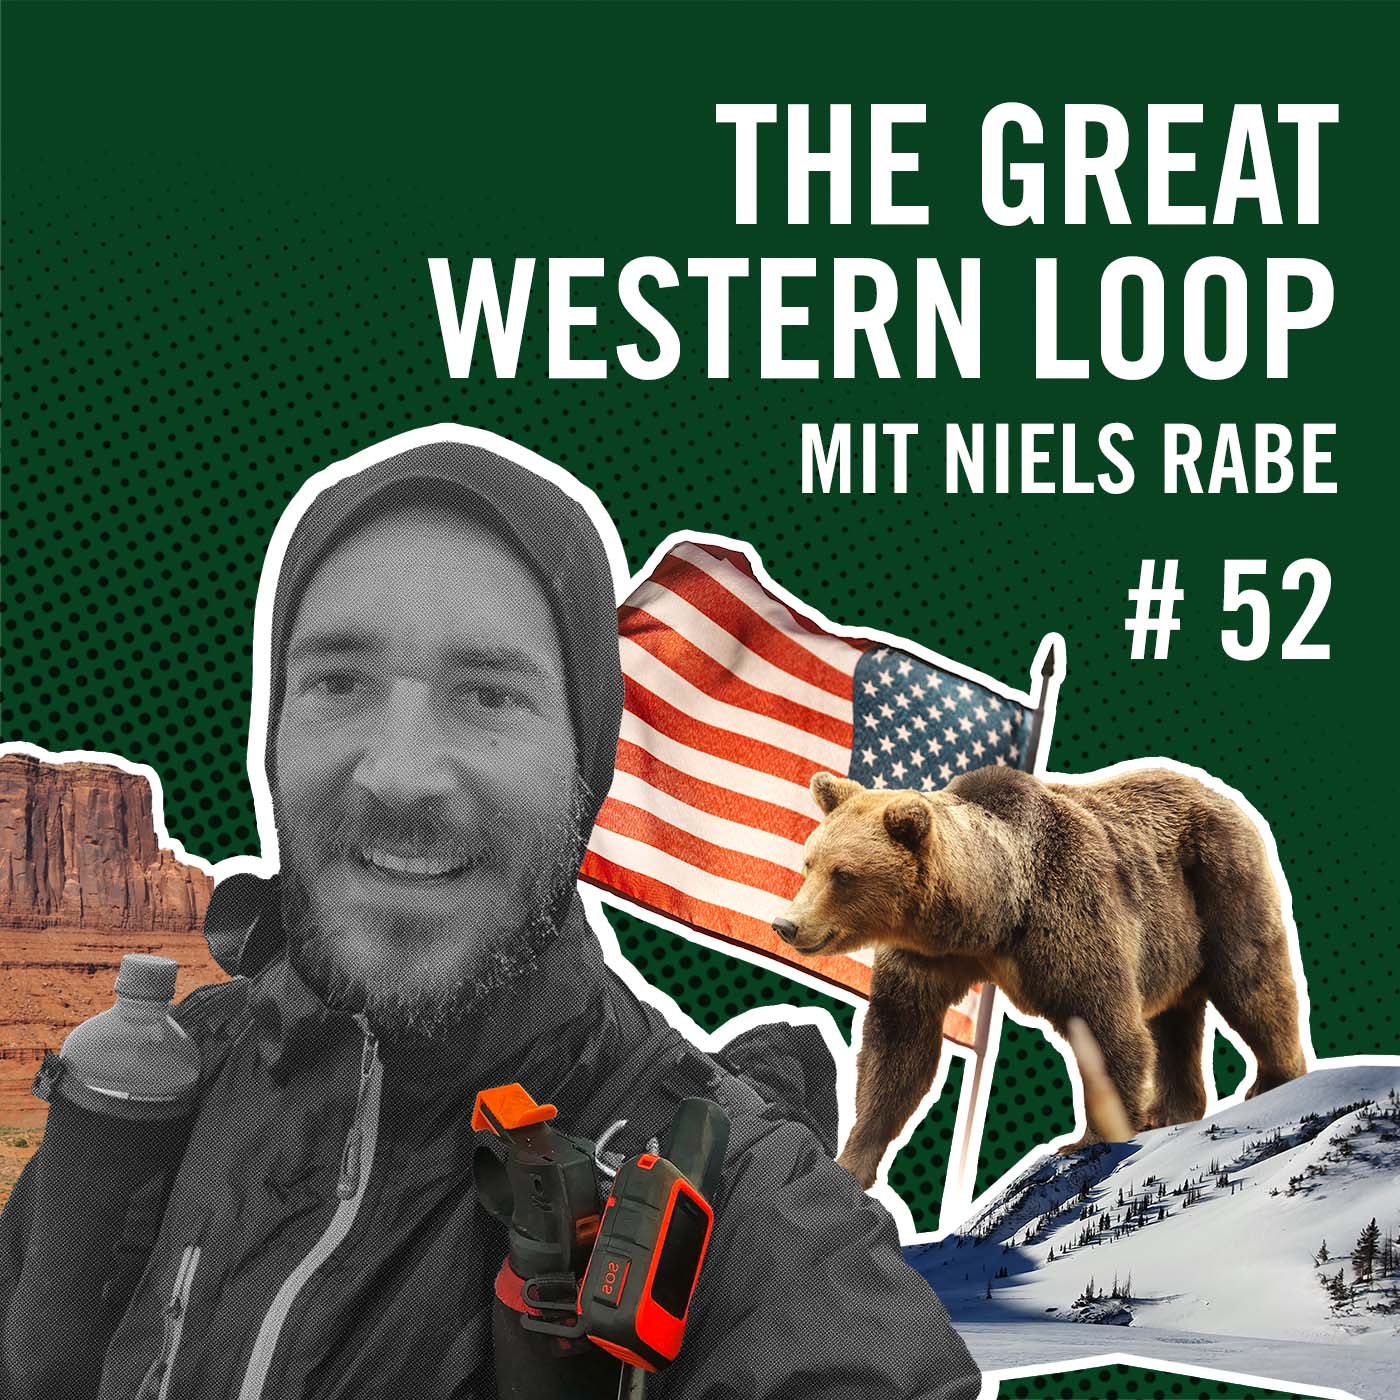 The Great Western Loop mit Niels Rabe #52